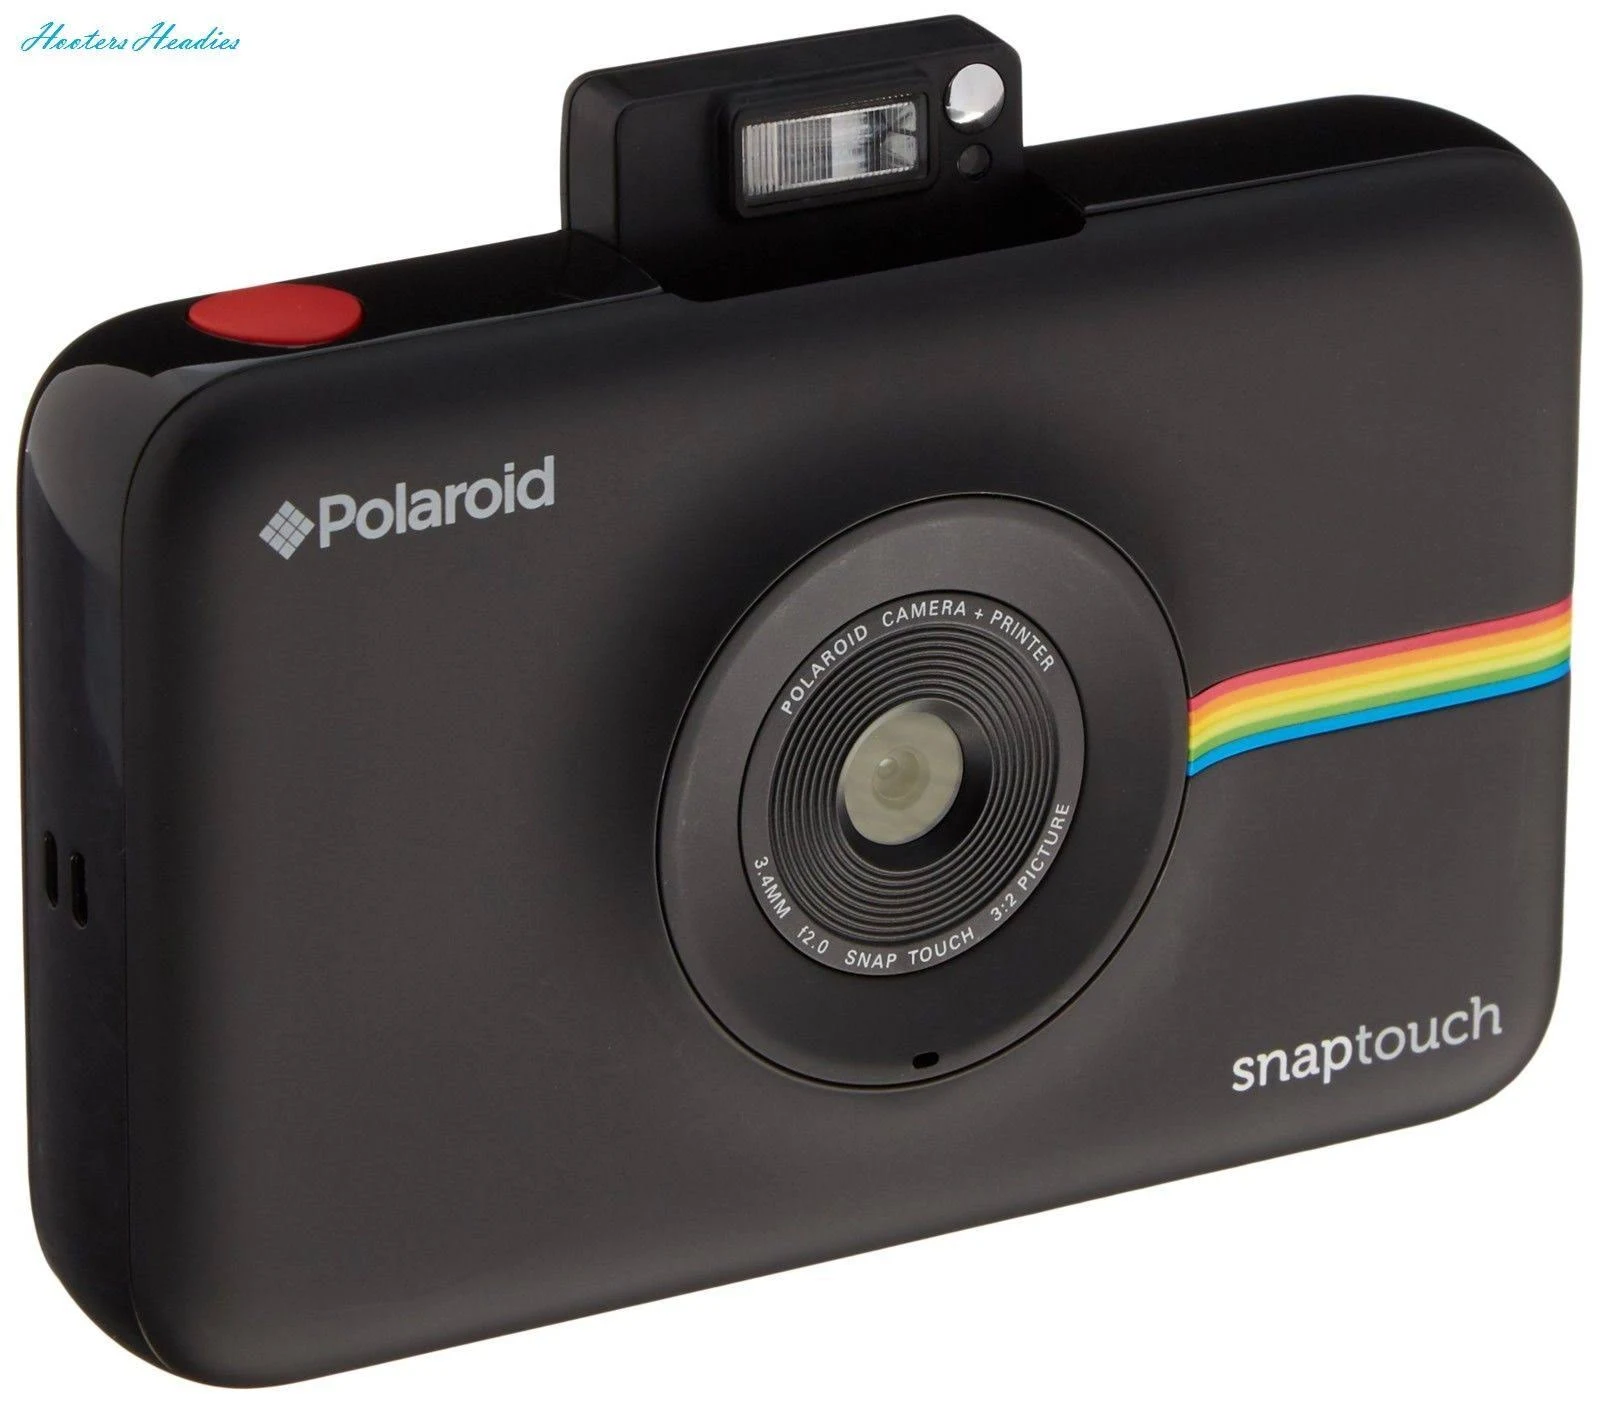  Polaroid स्नैप टच इंस्टेंट प्रिंट डिजिटल कैमरा विथ एलसीडी डिस्प्ले (ब्लैक) जिंक...